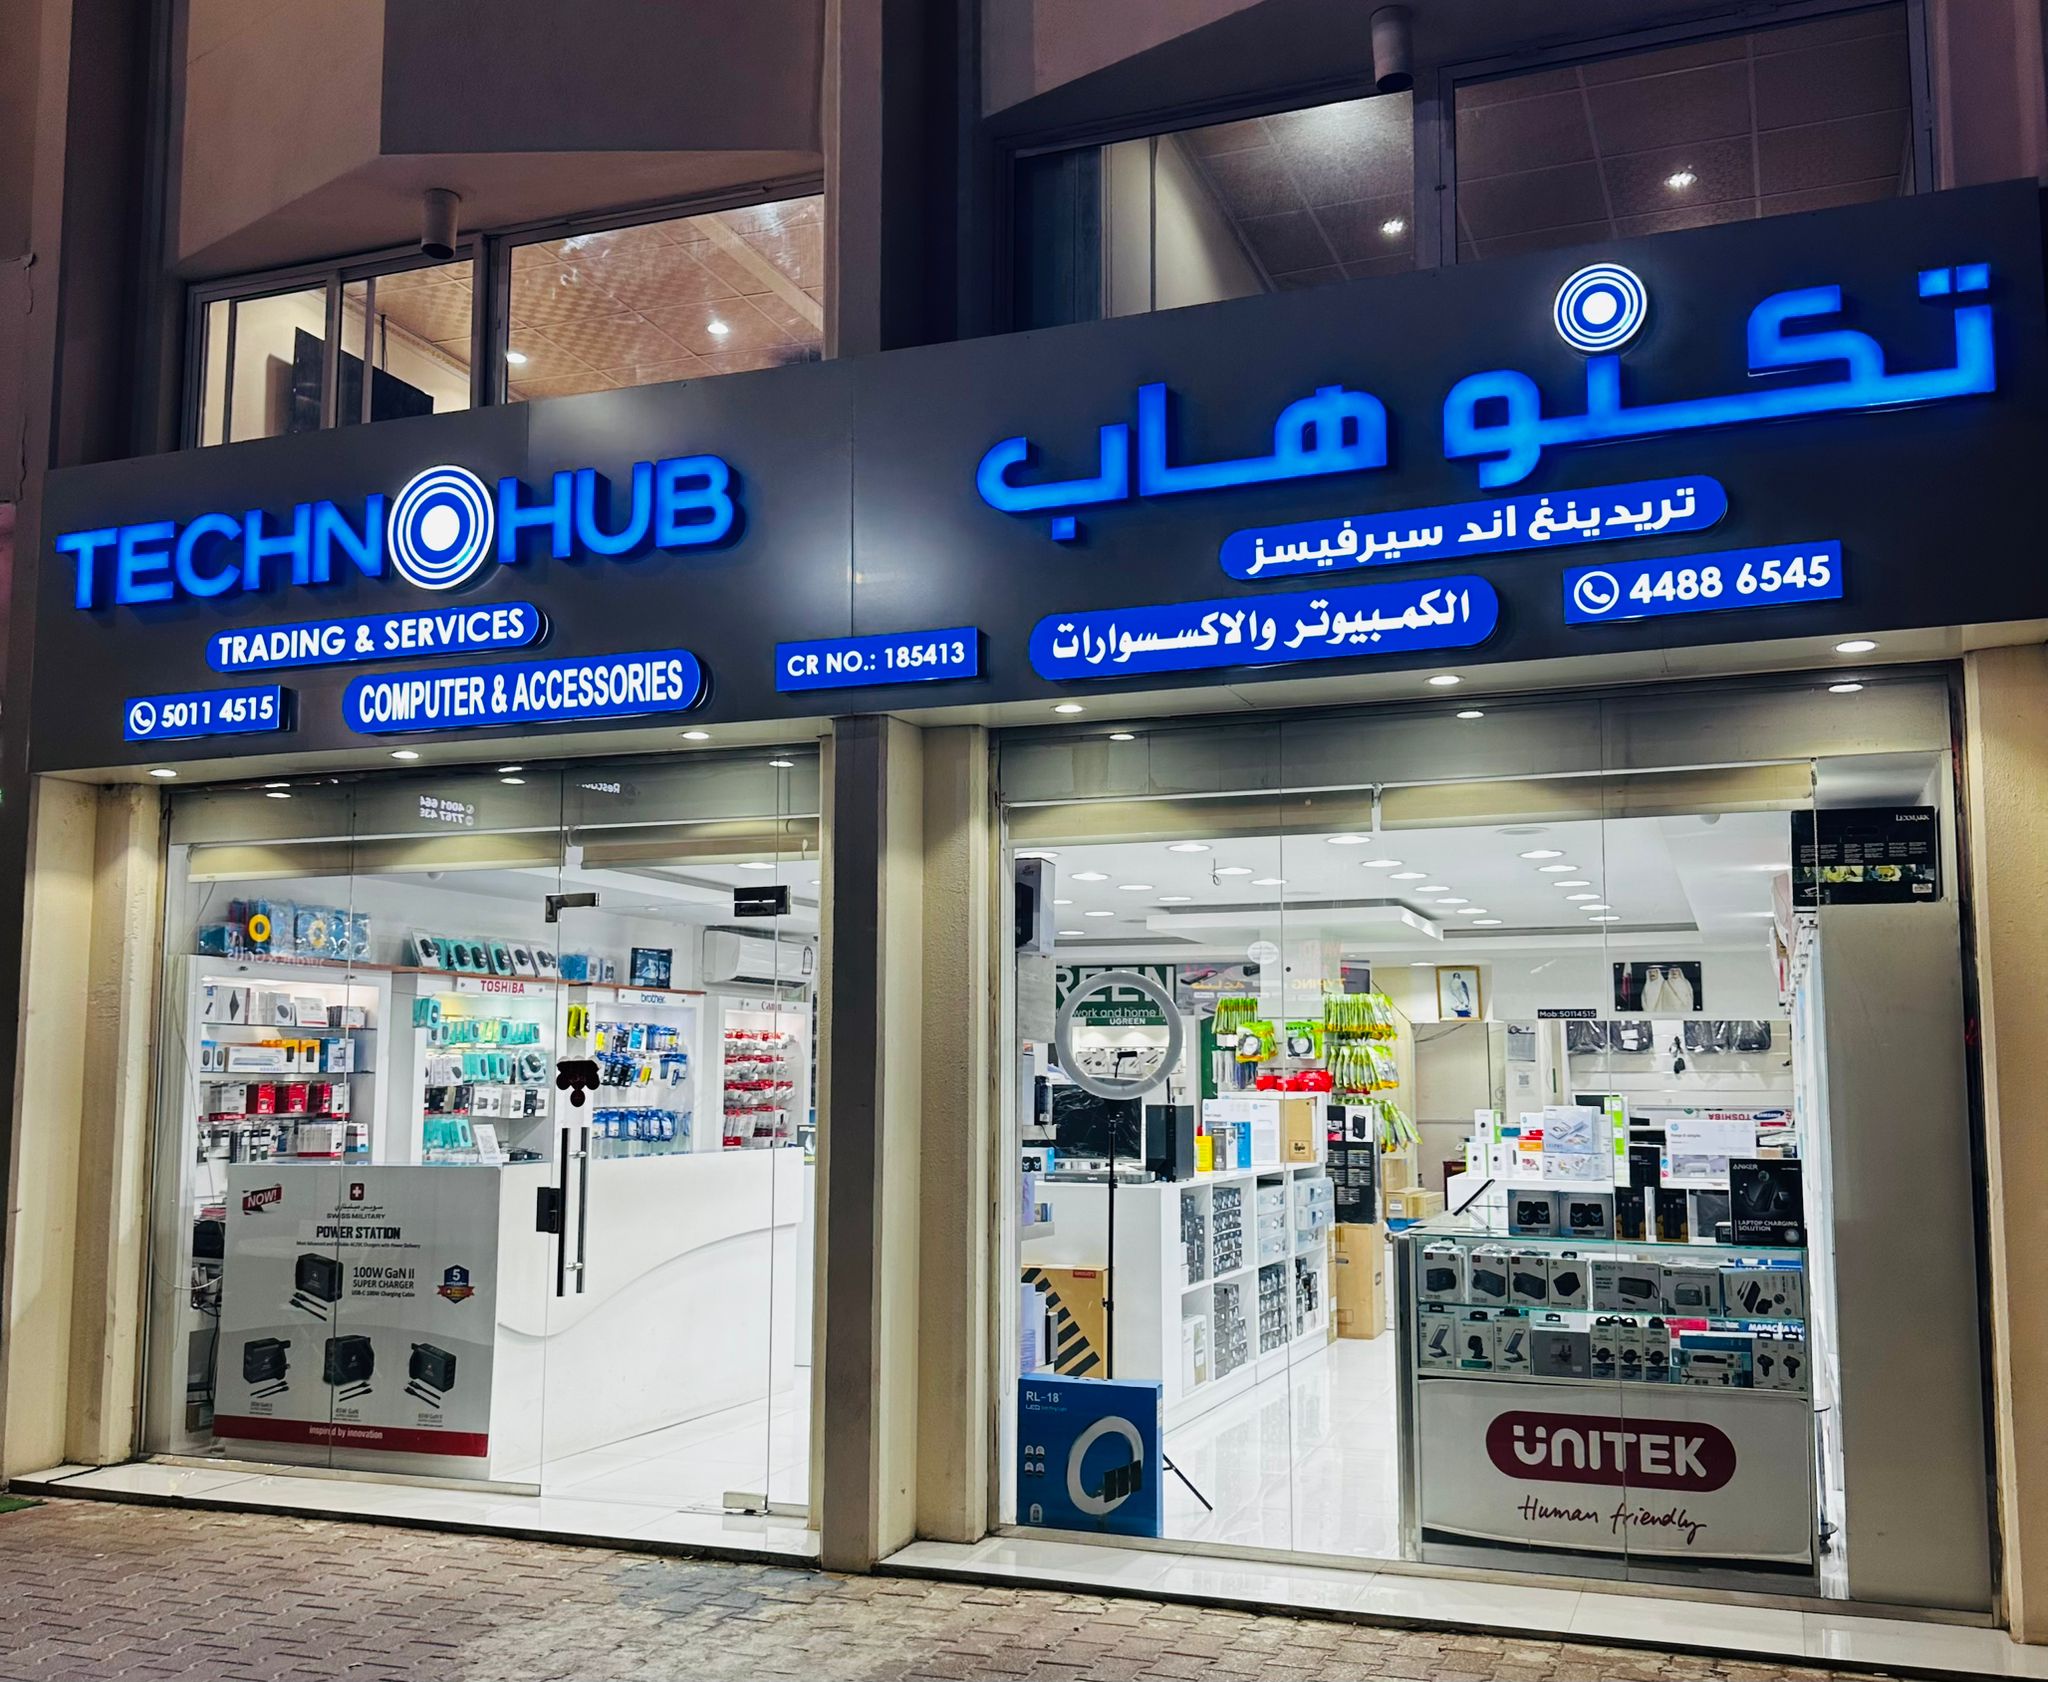 BIOS flashing services in Qatar